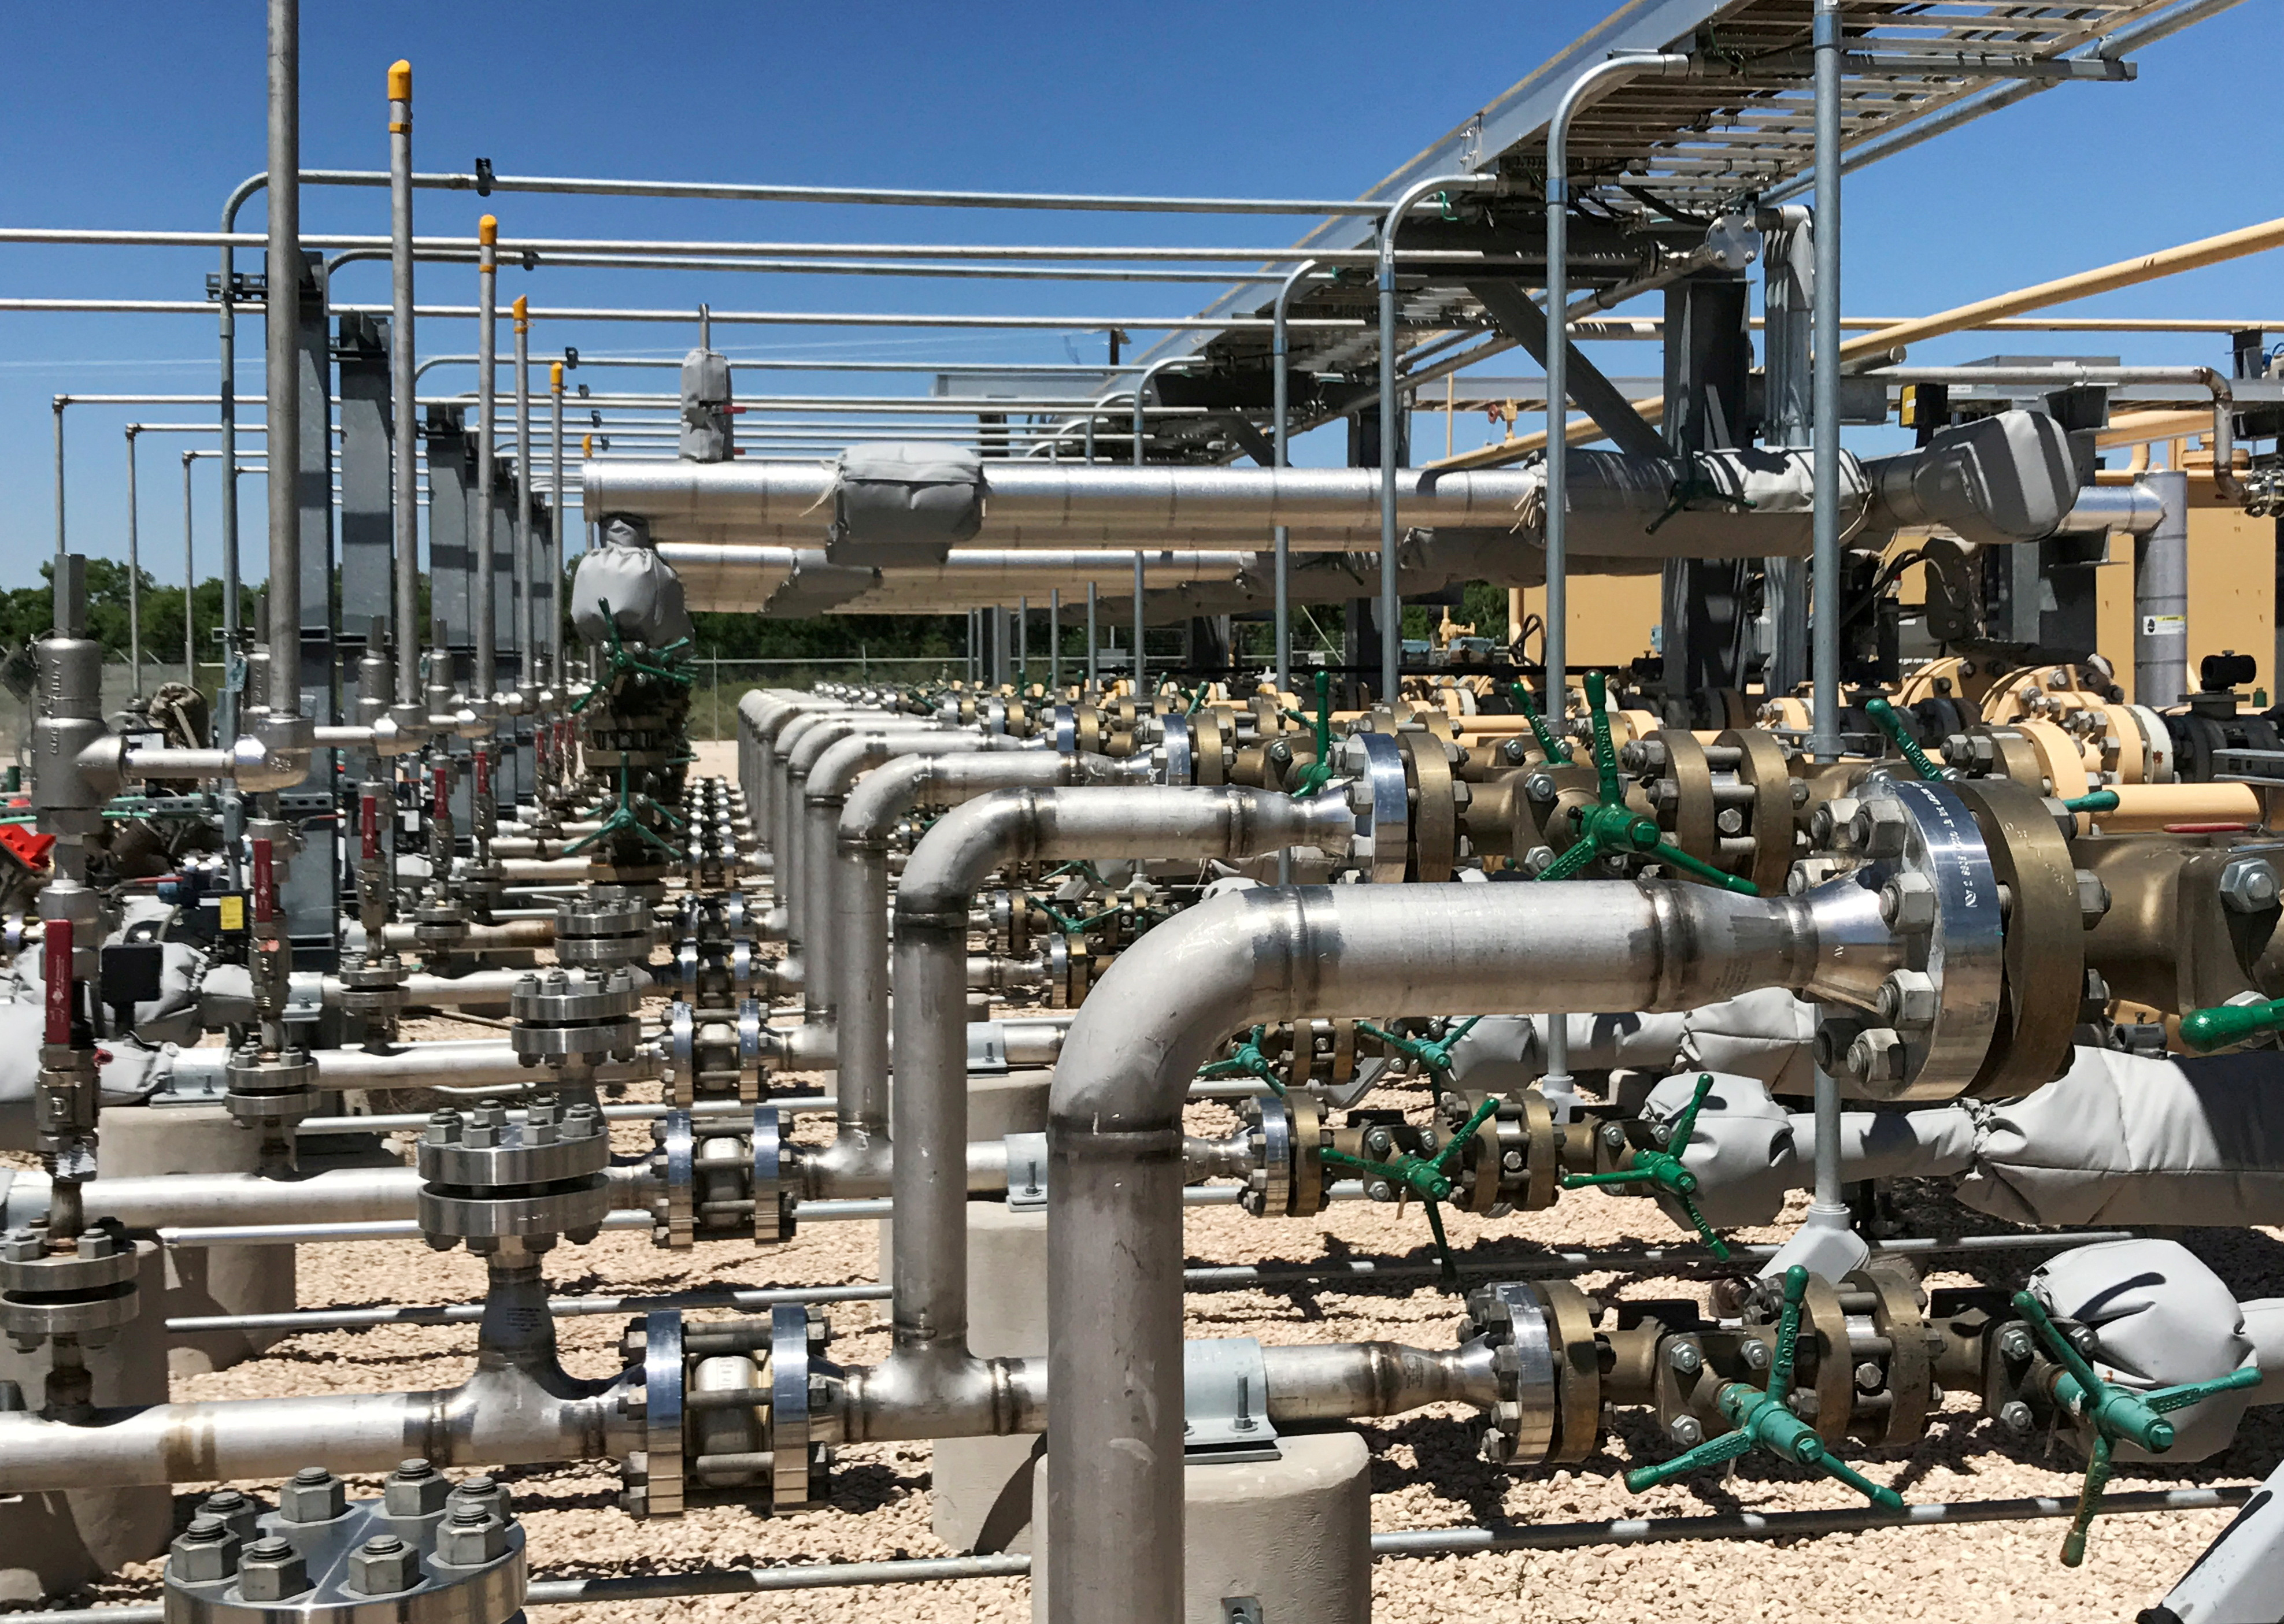 El equipo utilizado para procesar dióxido de carbono, petróleo crudo y agua se ve en un proyecto de recuperación mejorada de petróleo de Occidental Petroleum Corp en Hobbs, Nuevo México, Estados Unidos (Reuters)